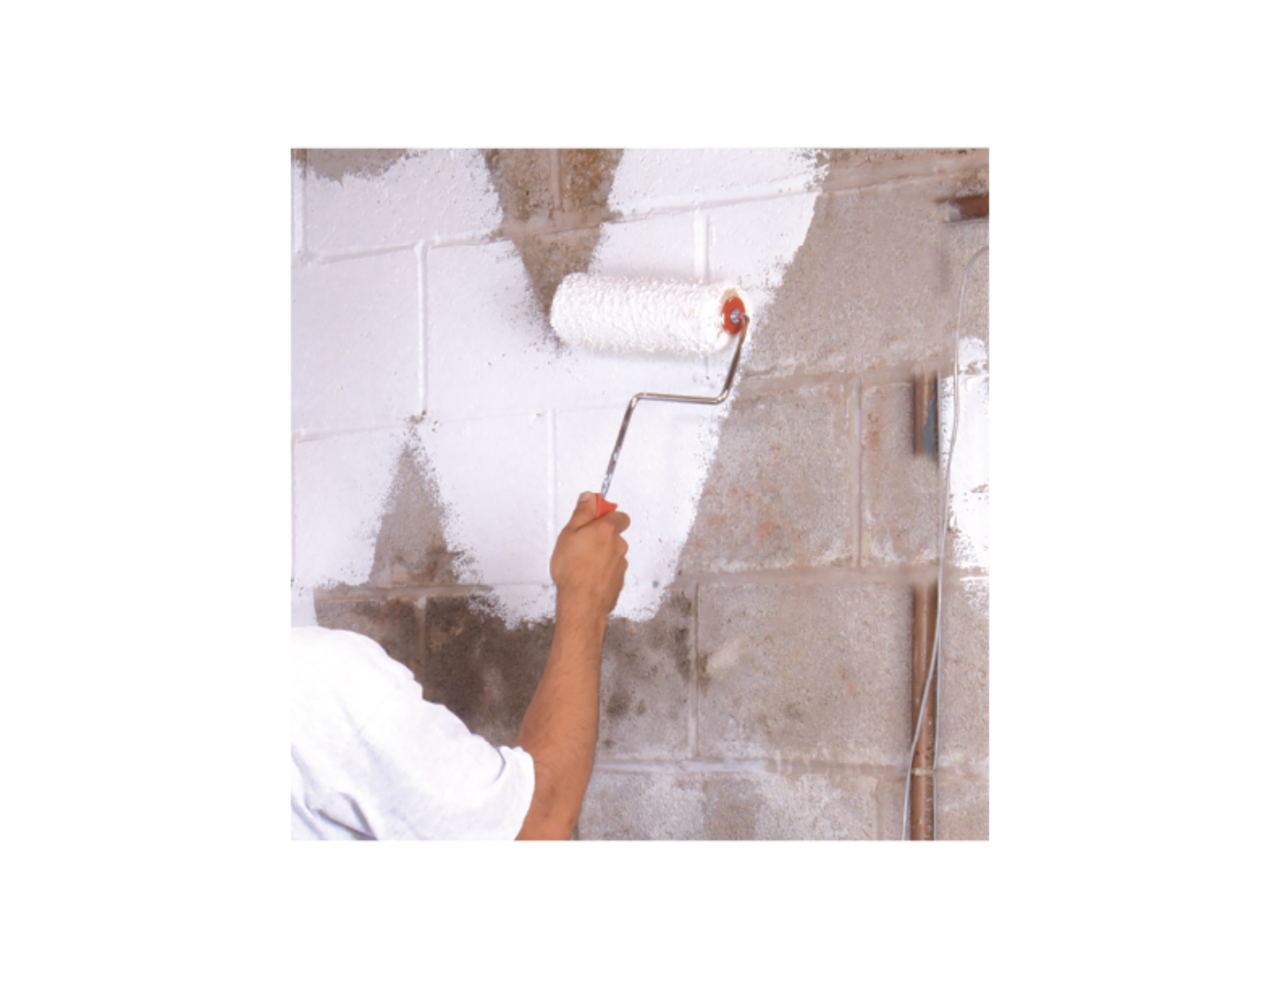 RUST-OLEUM Peinture intérieure anti-moisissures PERMA-WHITE, 3,7 L